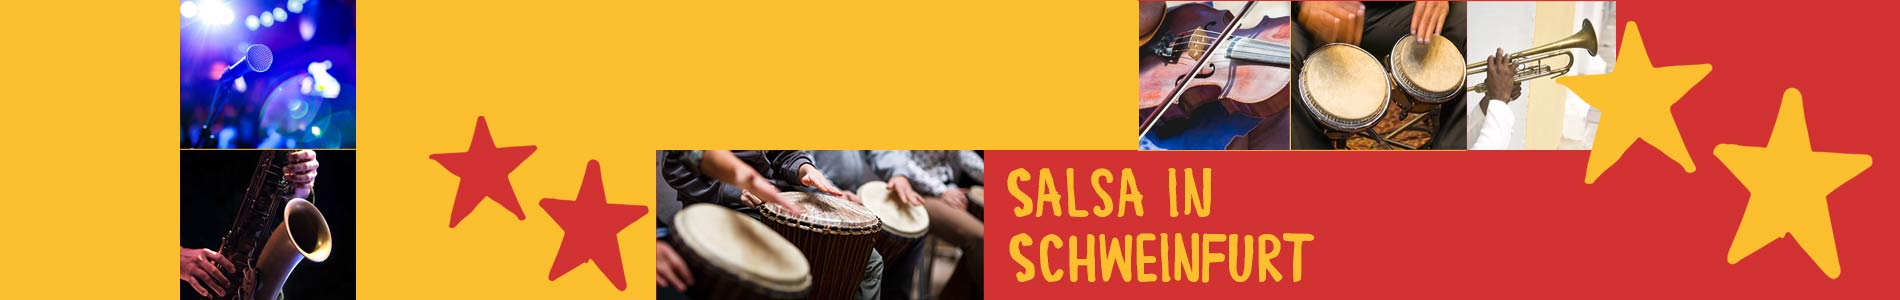 Salsa in Schweinfurt – Salsa lernen und tanzen, Tanzkurse, Partys, Veranstaltungen